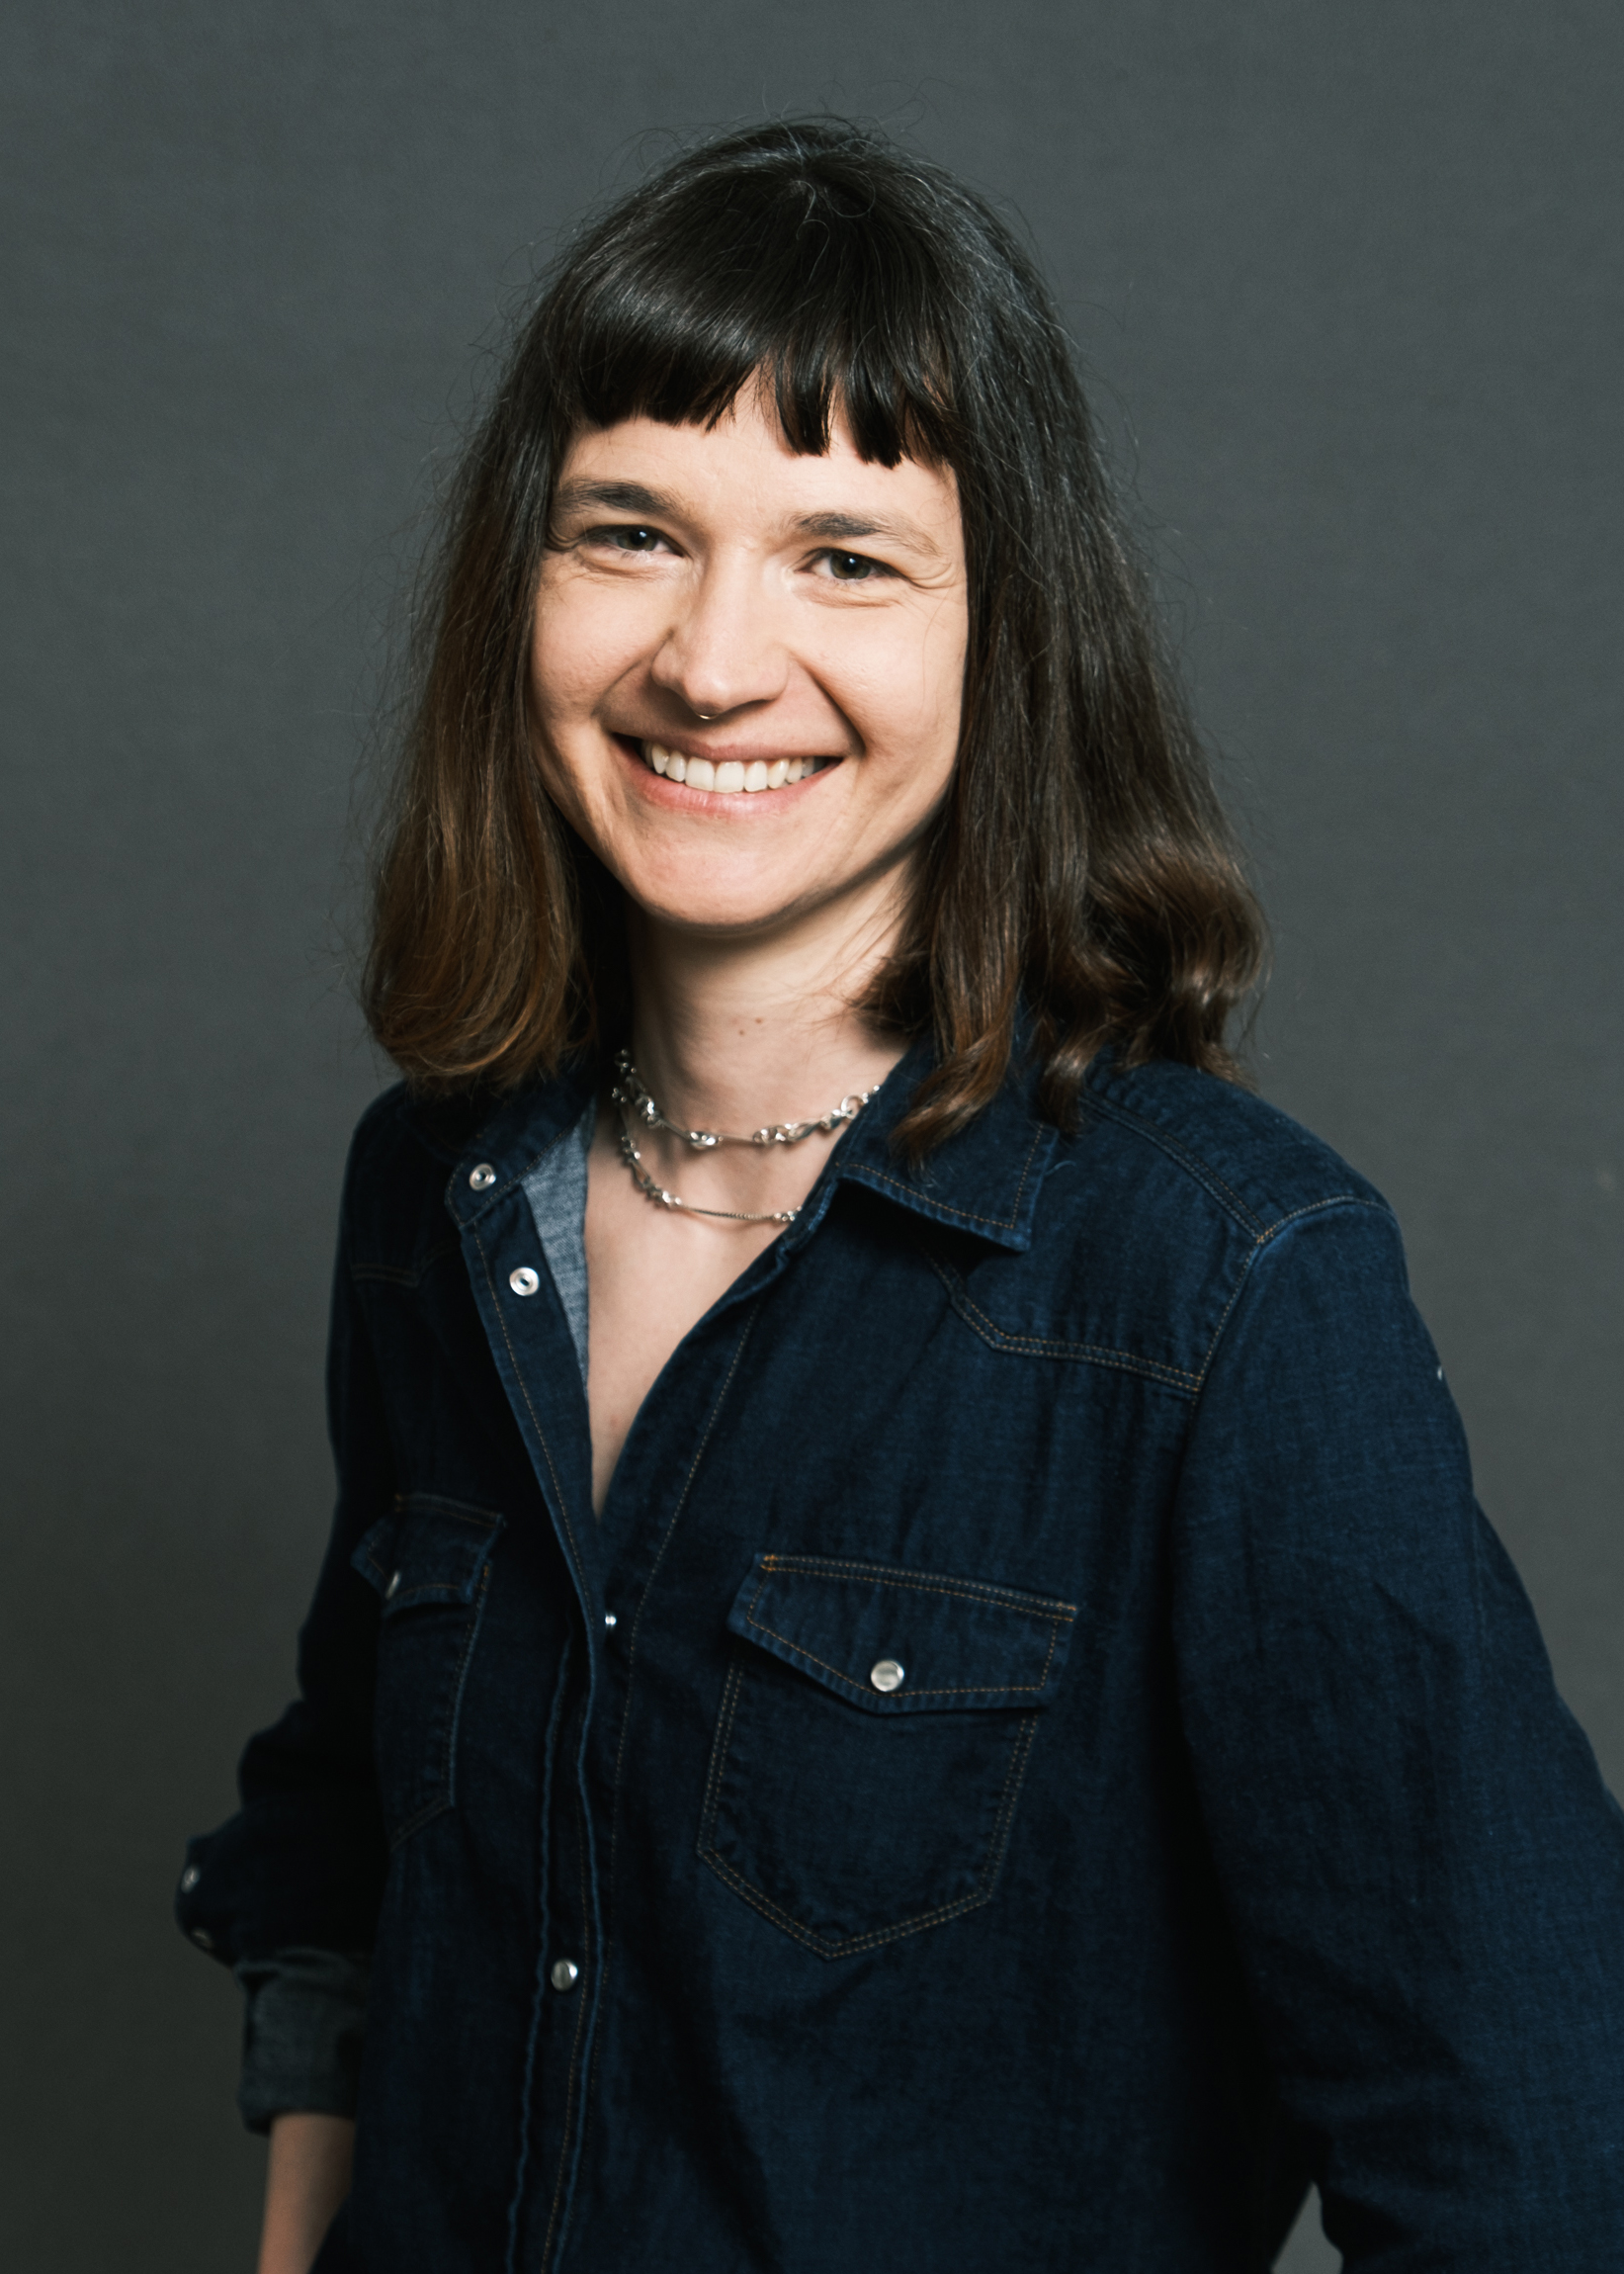 Portrait en studio de Juliette Angotti, praticienne en hypnose Ericksonienne à Marseille et en ligne. Juliette Angotti porte une veste en jeans bleue et sourit à la caméra pour se présenter sur la page d'accueil de son site internet.